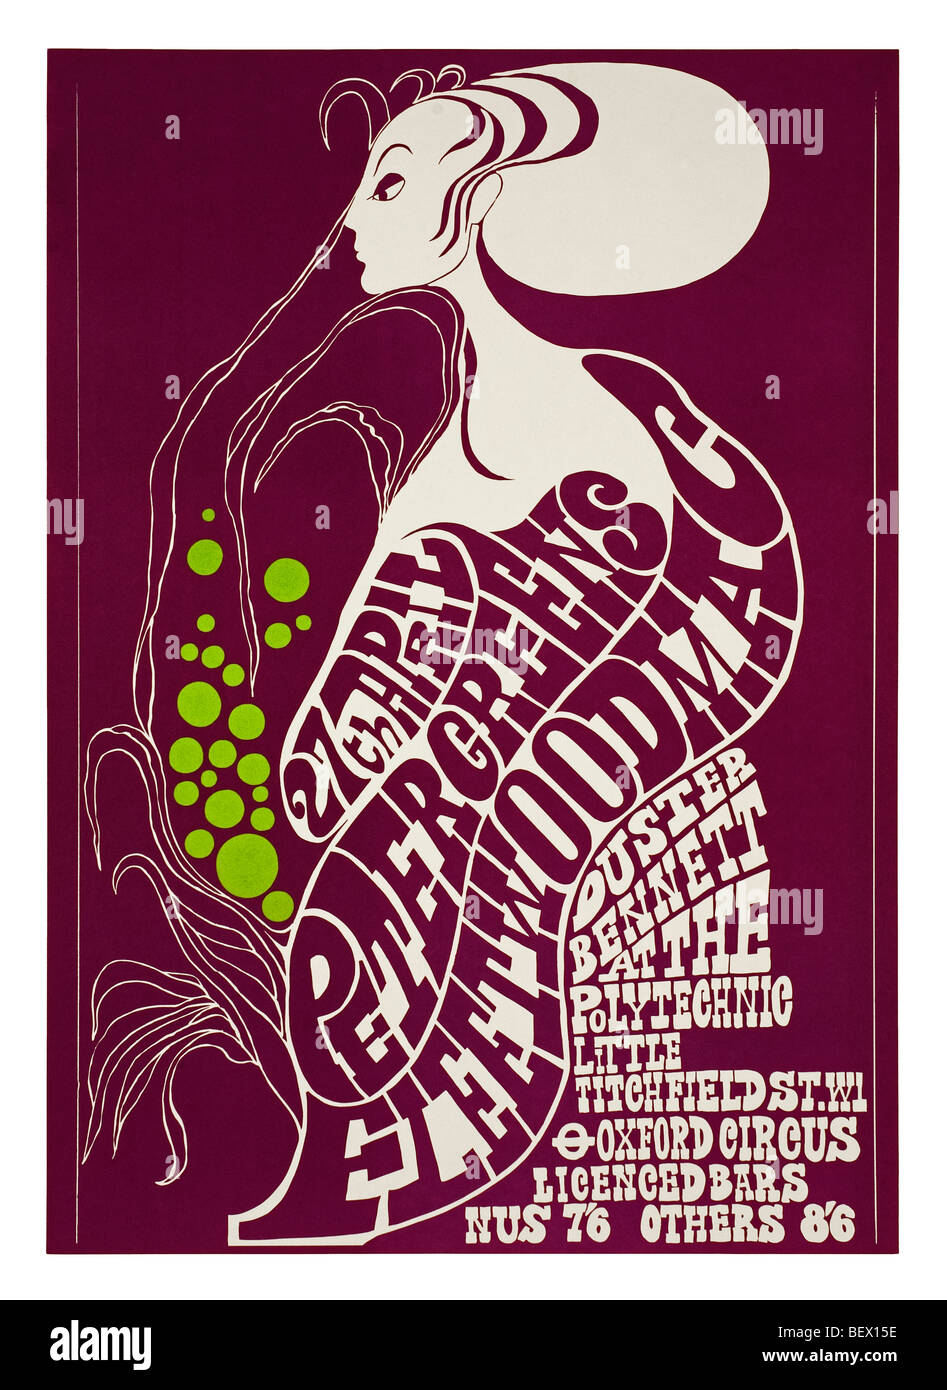 Affiche pour Peter Green's Fleetwood Mac à la London Polytechnic en 1967 Banque D'Images